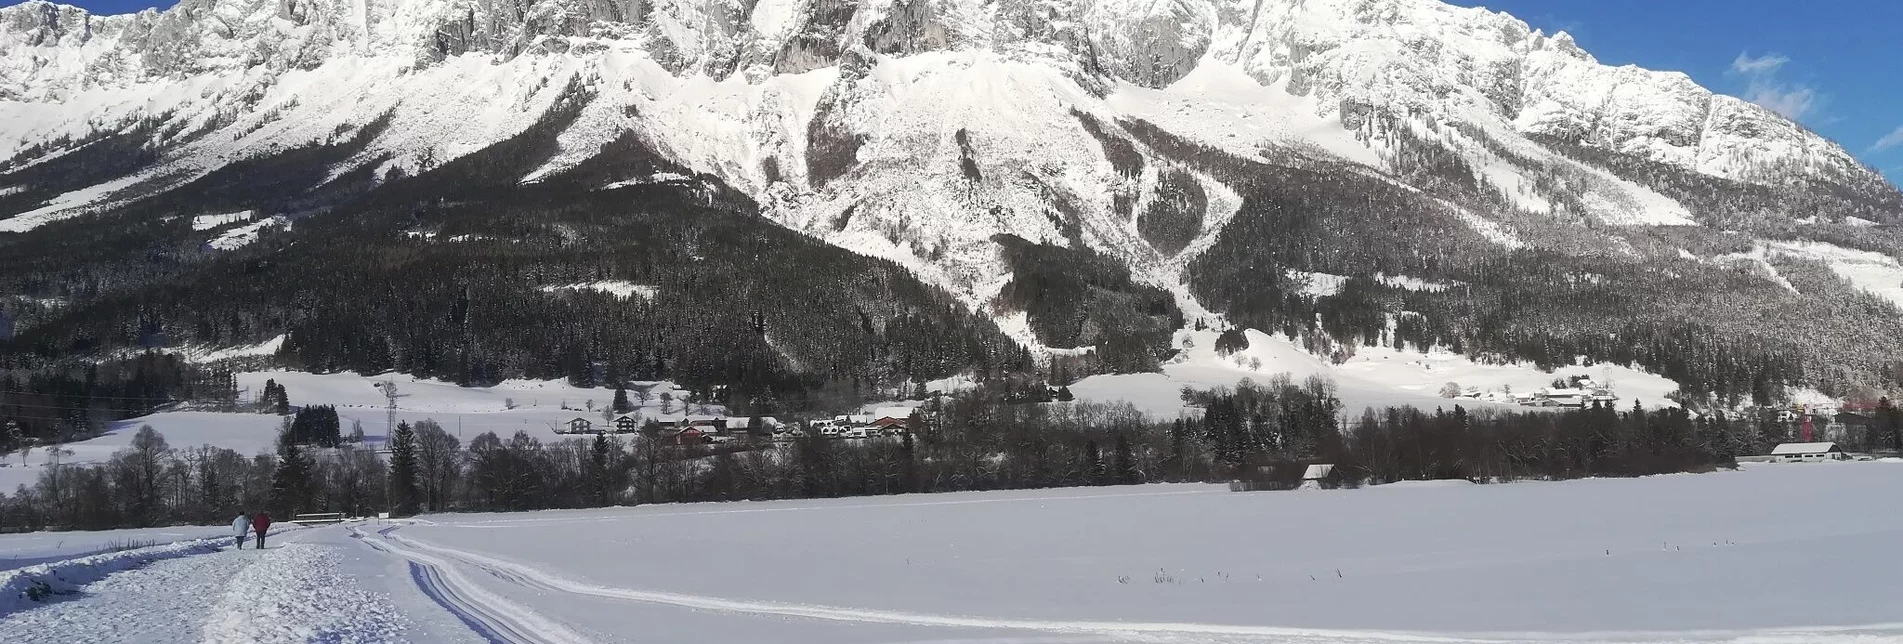 Cross-Country Skiing XC trail Öblarn-Niederöblarn - Touren-Impression #1 | © Erlebnisregion Schladming-Dachstein